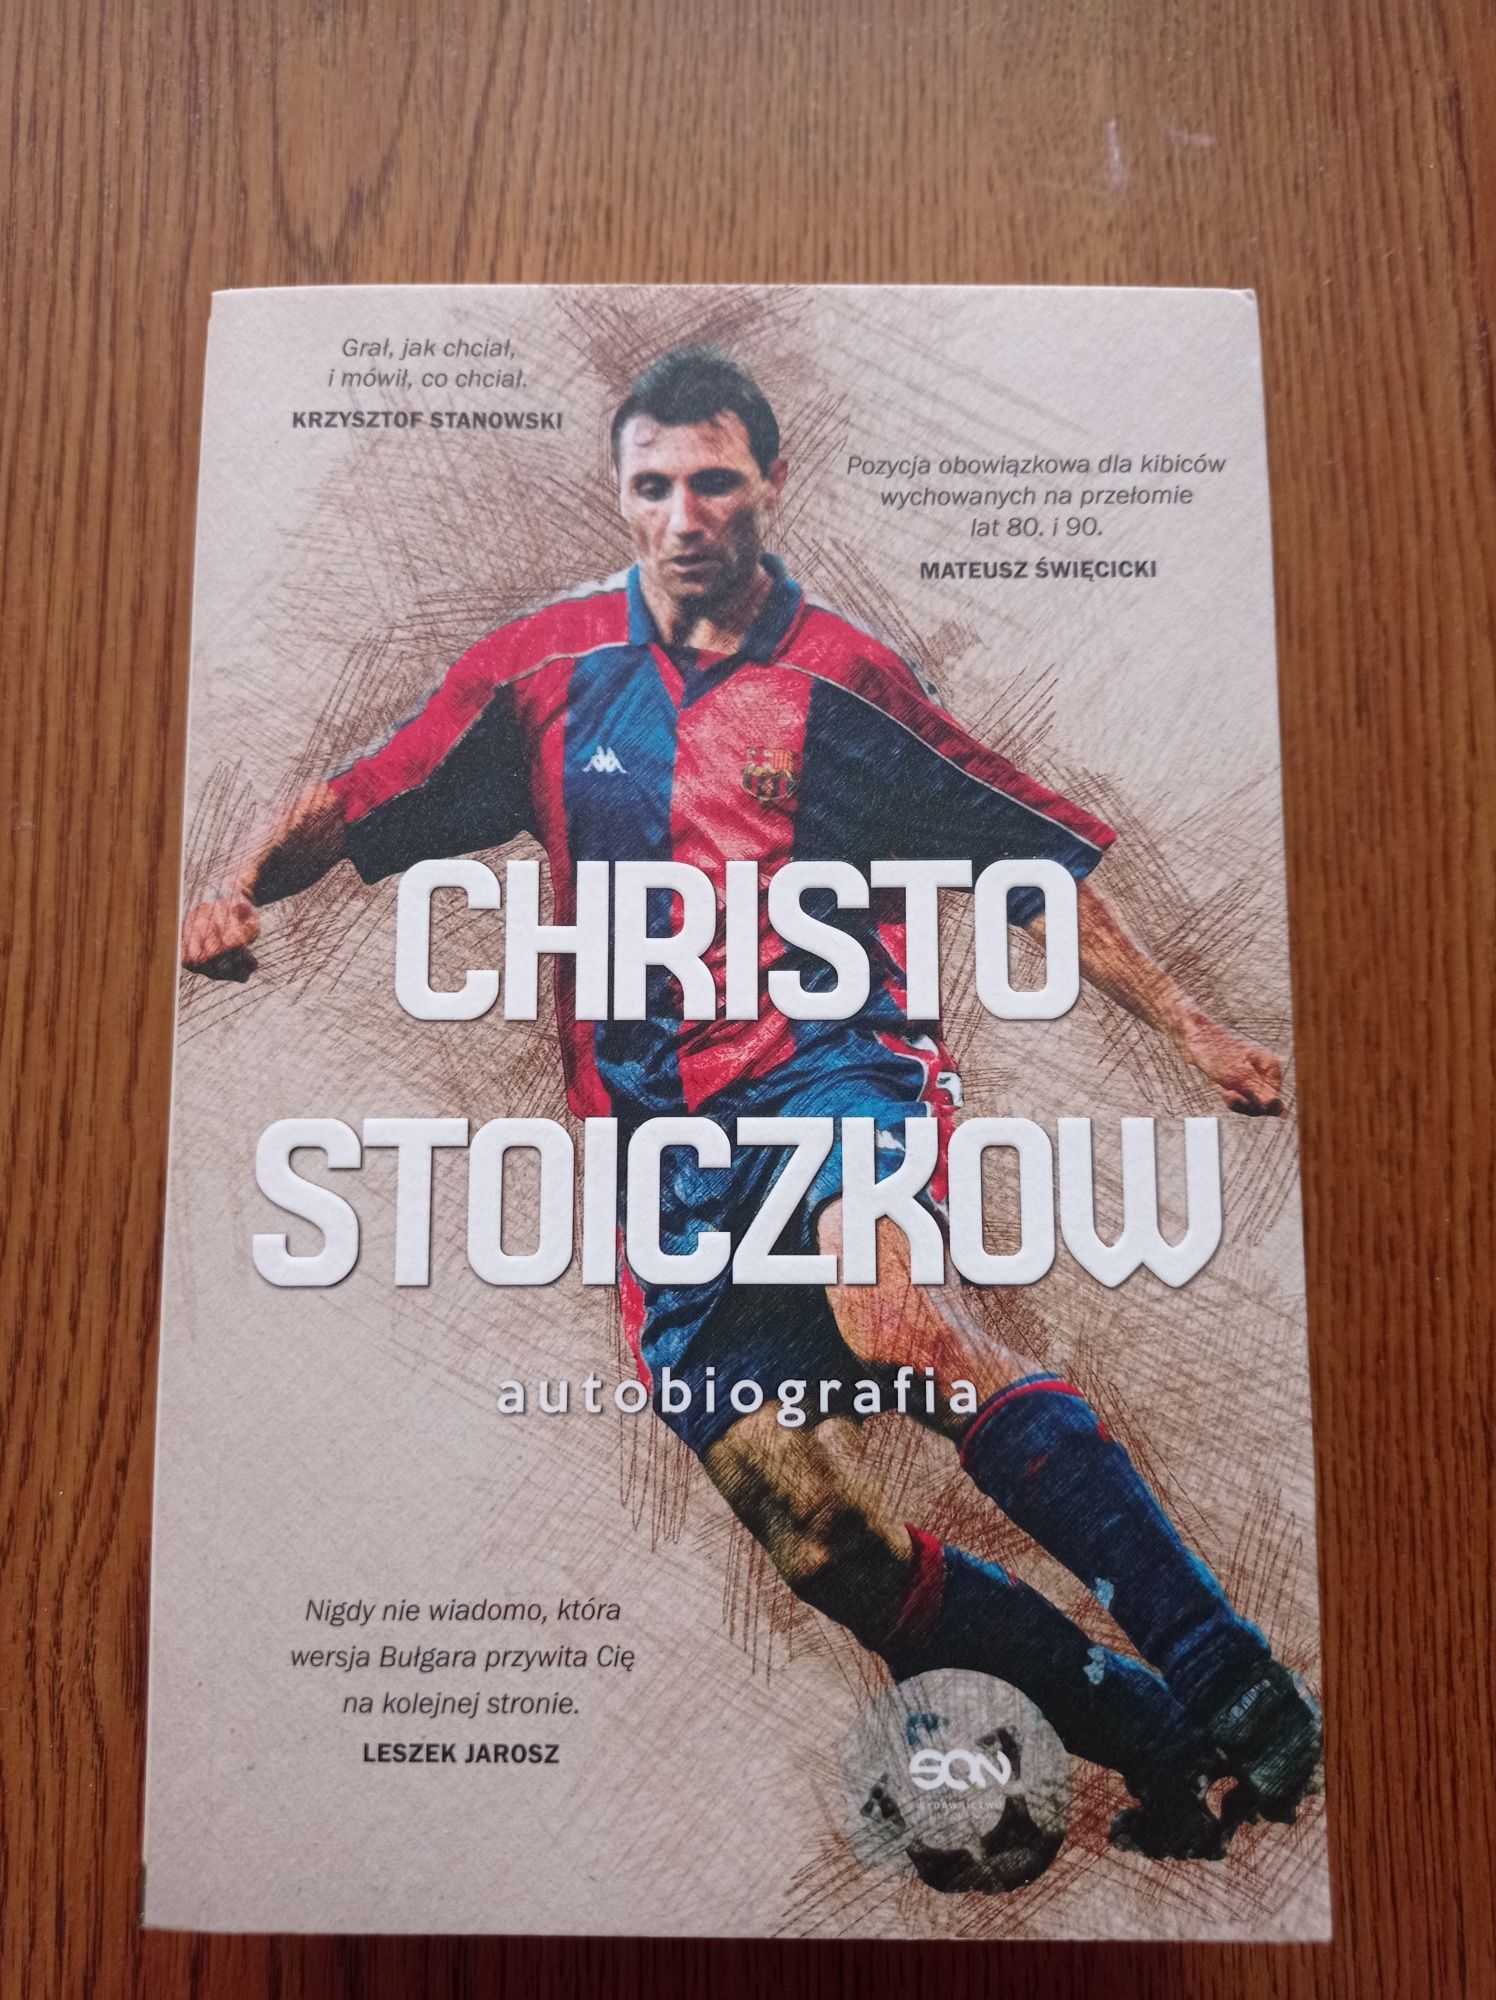 Christo Stoiczkow